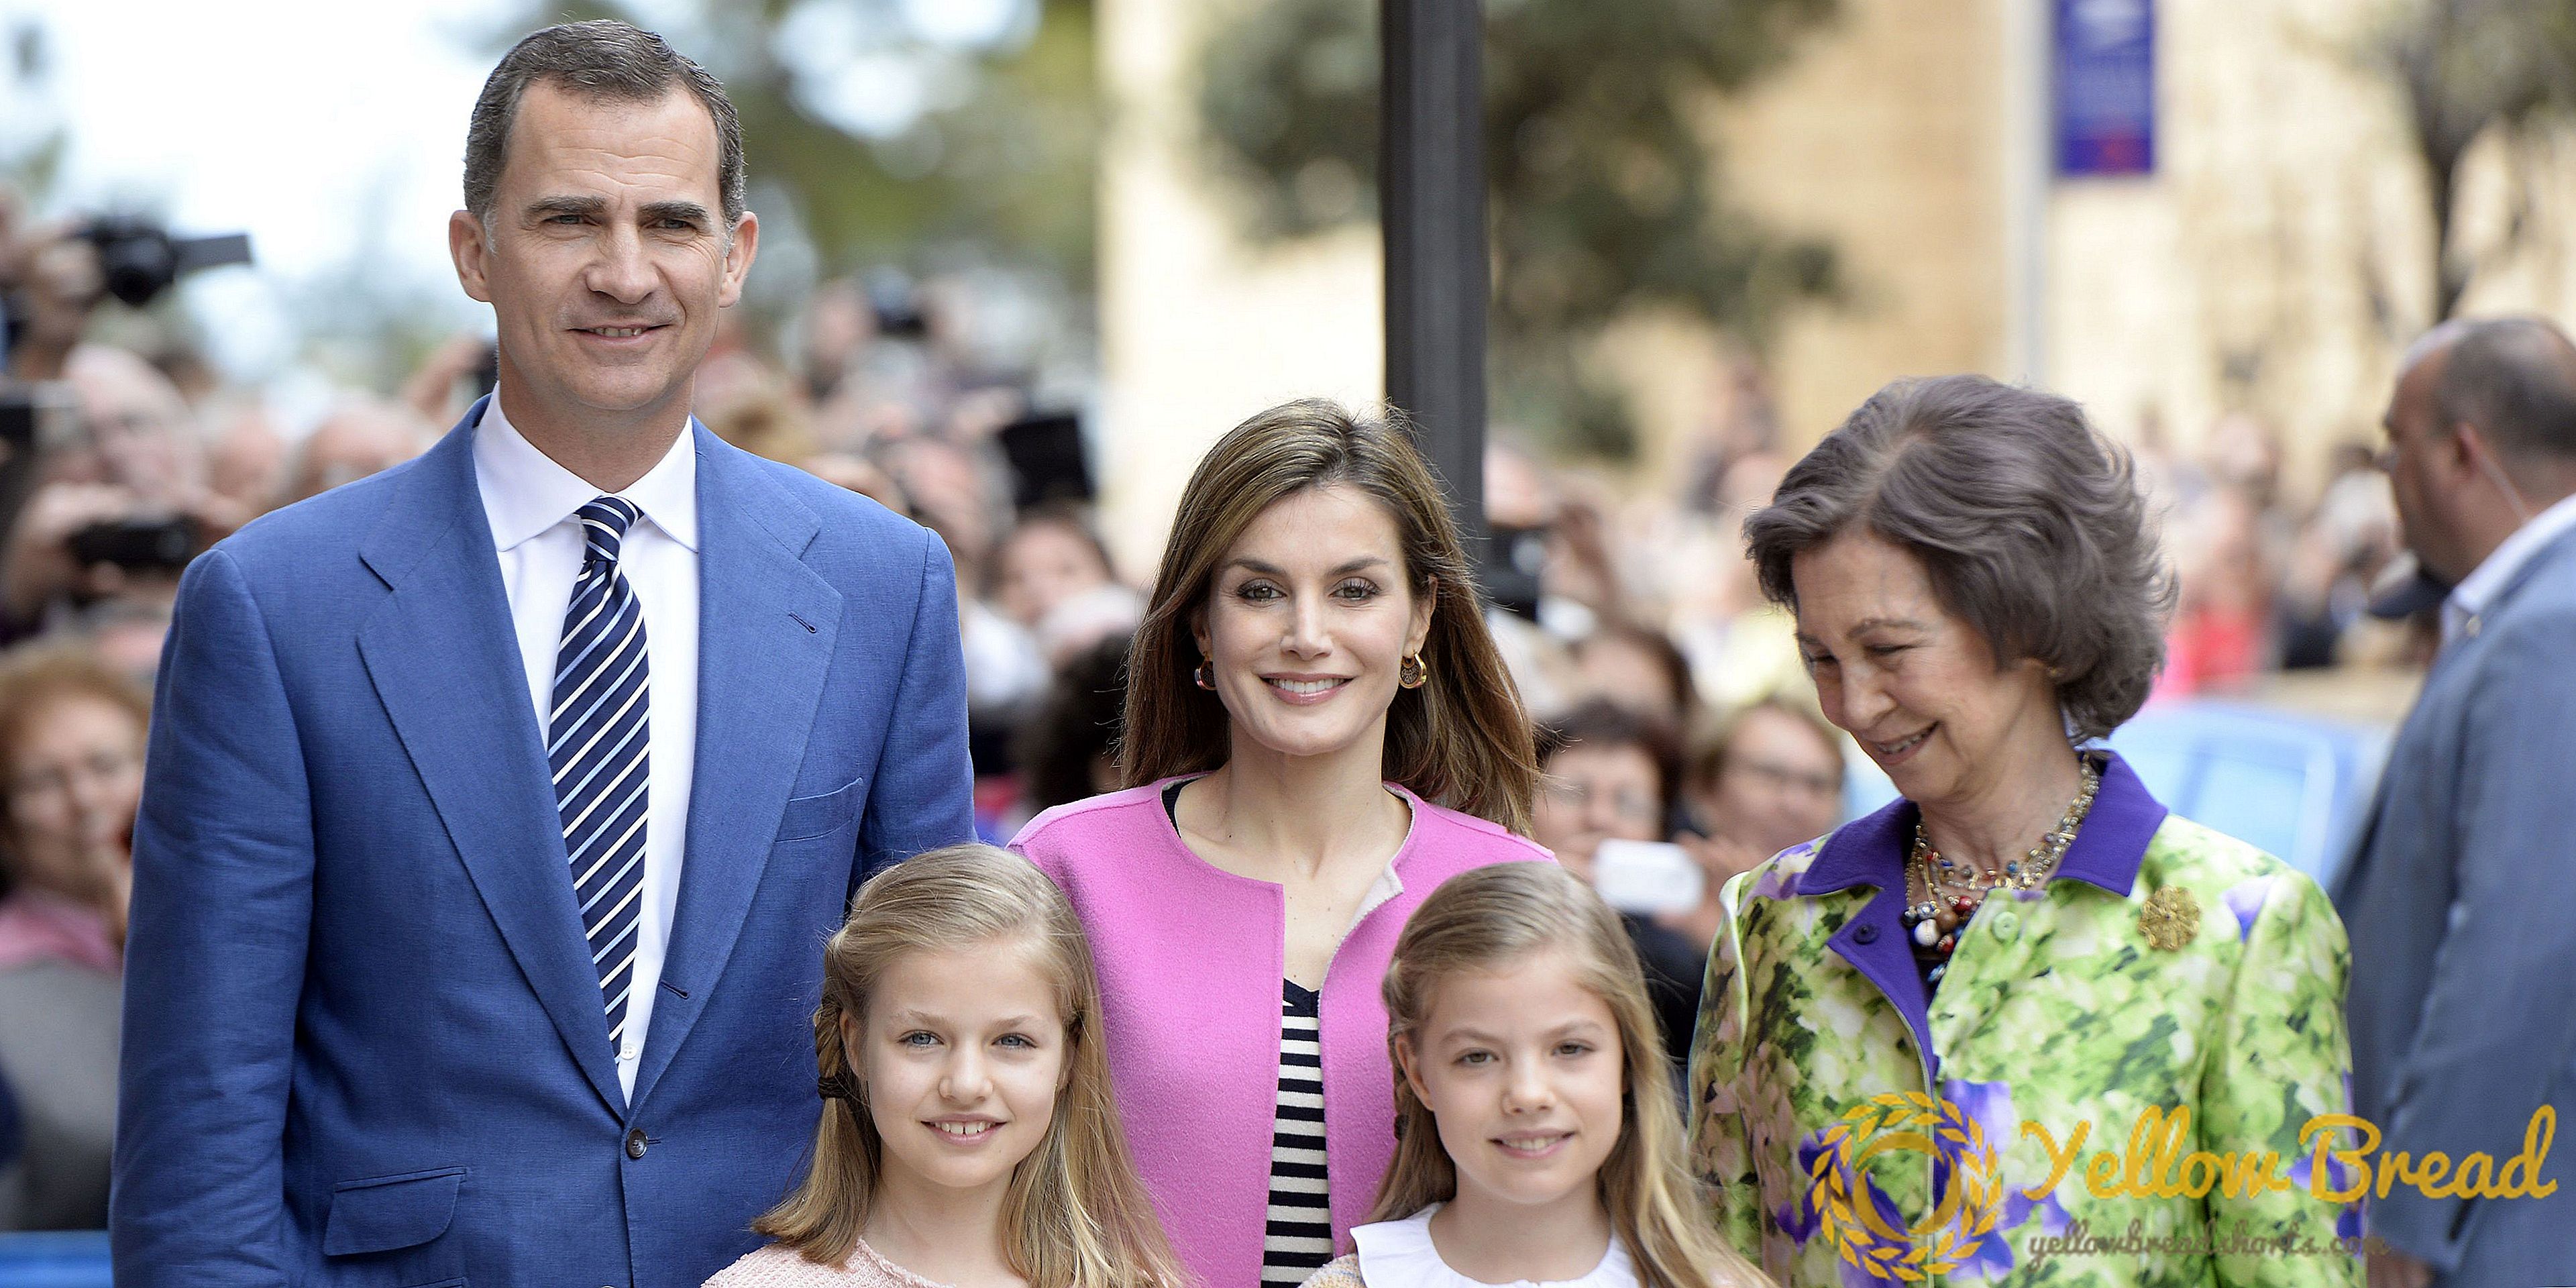 스페인 왕실, 2015 년에받은 선물 목록 공개